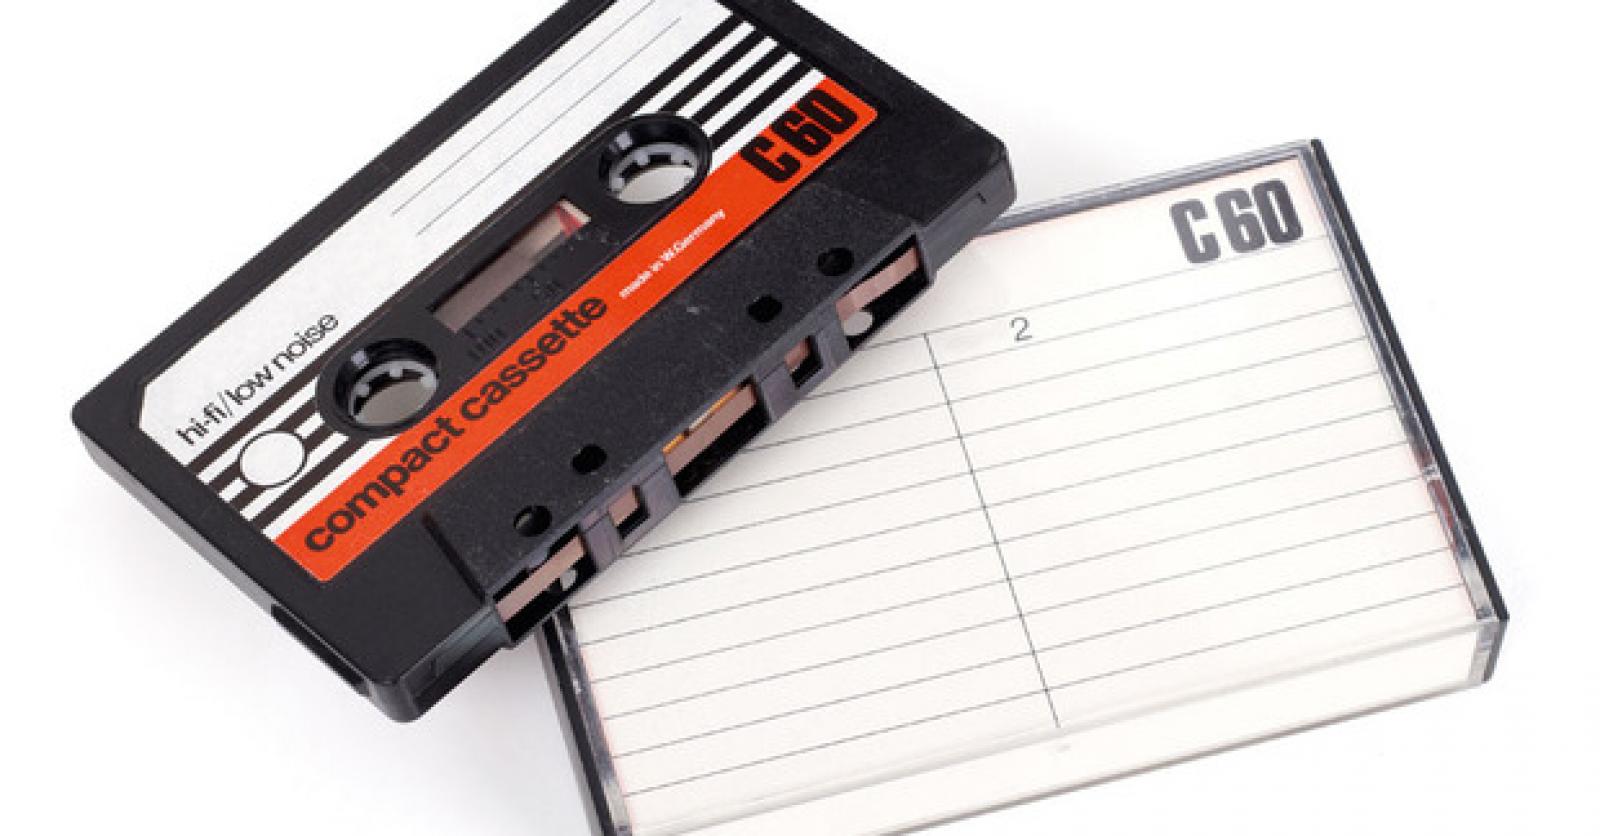 LECTEUR et CONVERTISSEUR CASSETTE K7 - analogique en numérique MP3